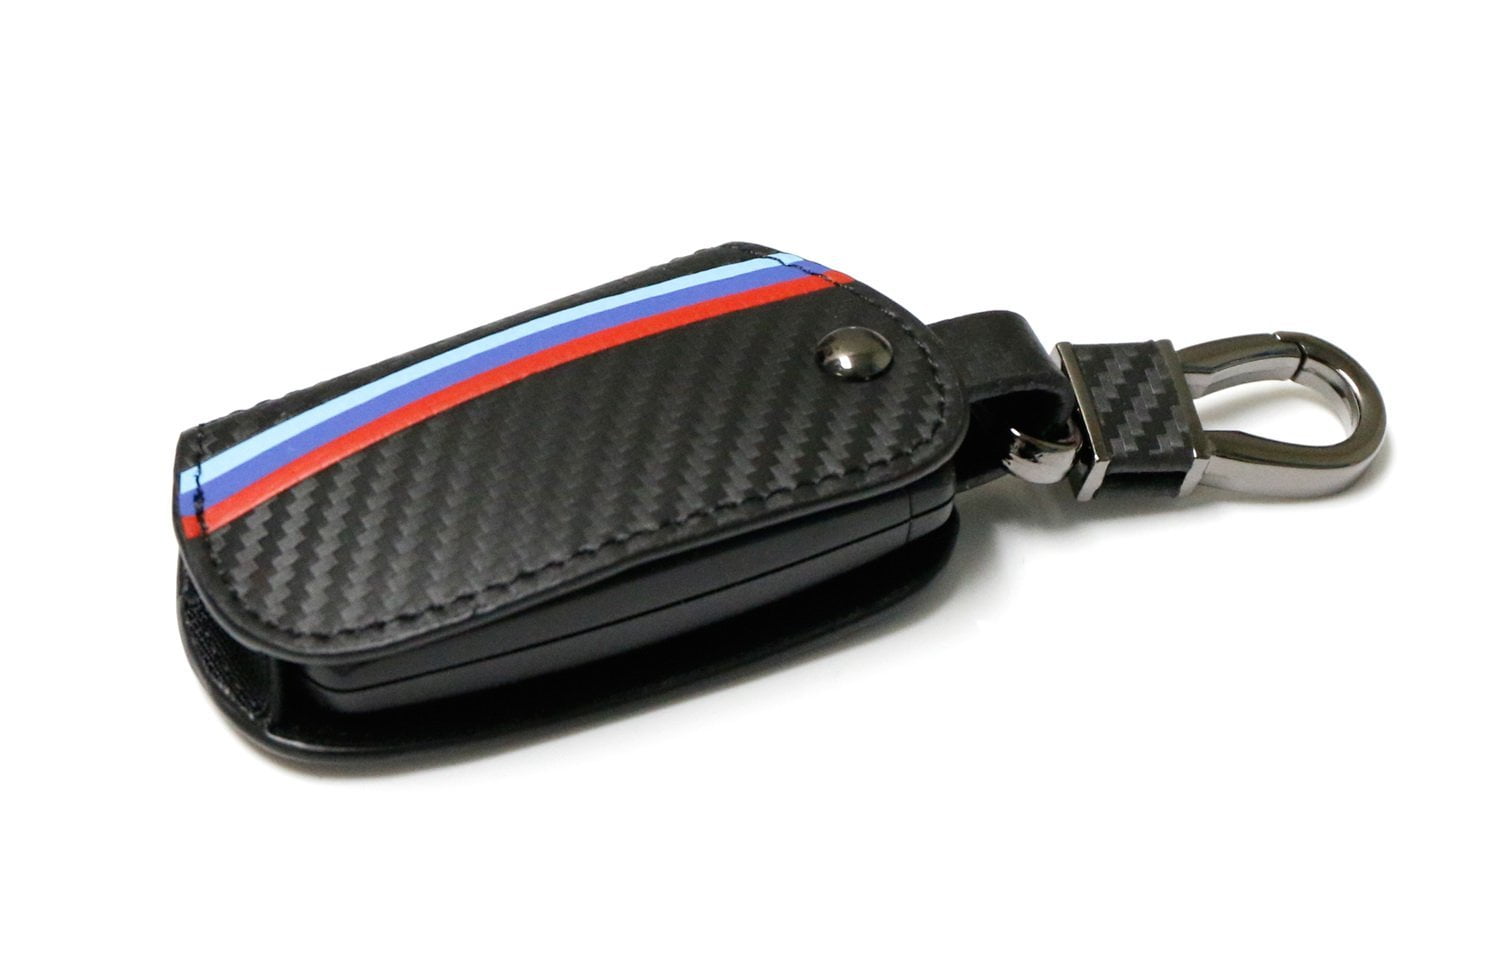 M-Colored Stripe Black Carbon Fiber Pattern Leather Key Holder